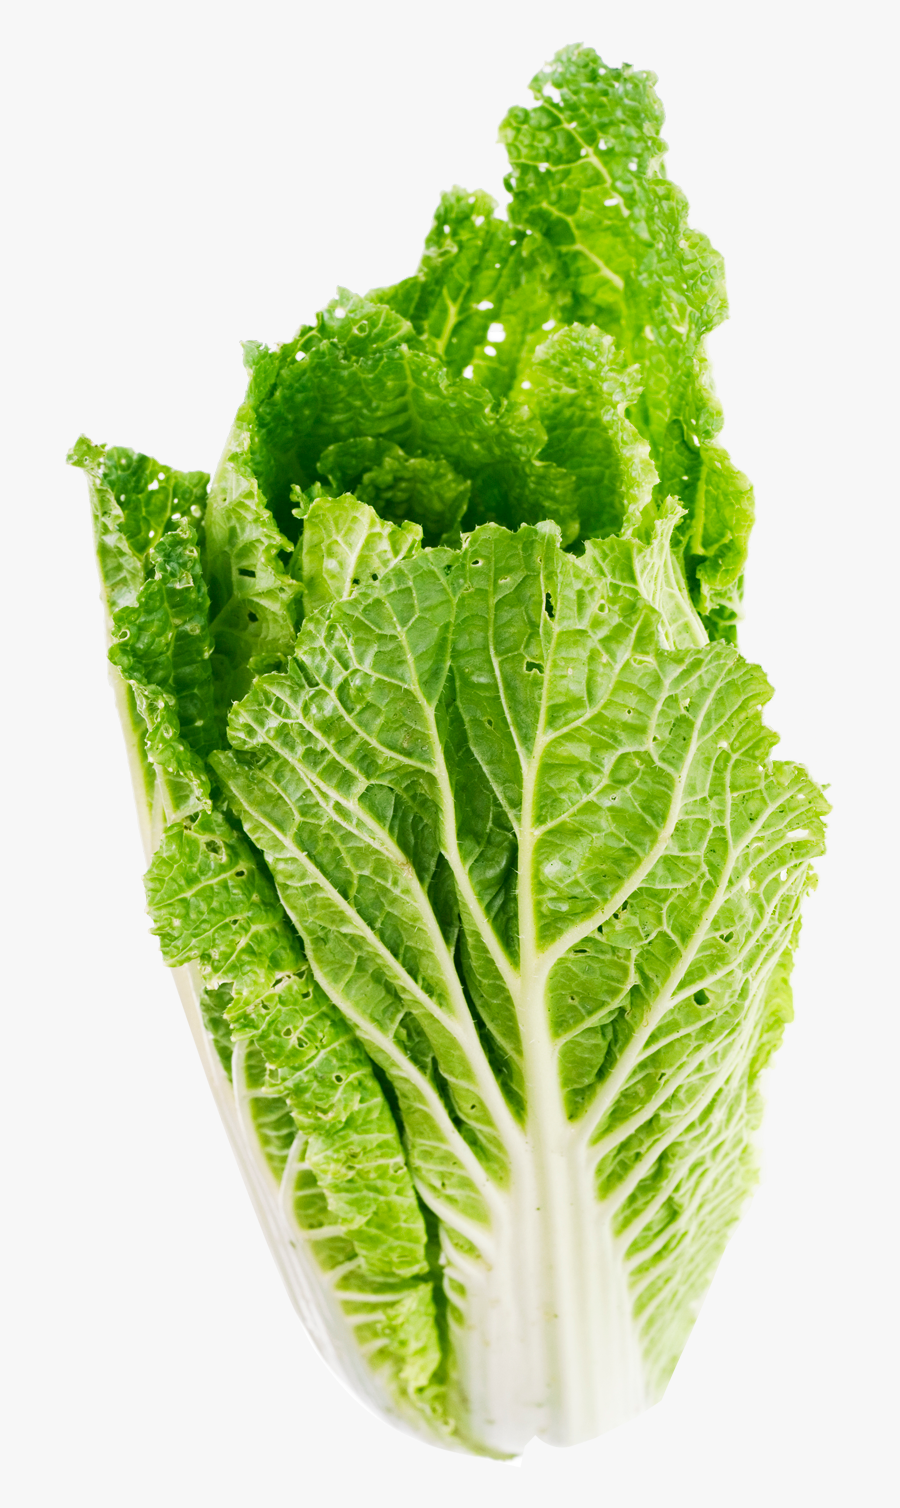 Lettuce-leaf - Transparent Background Lettuce Png, Transparent Clipart